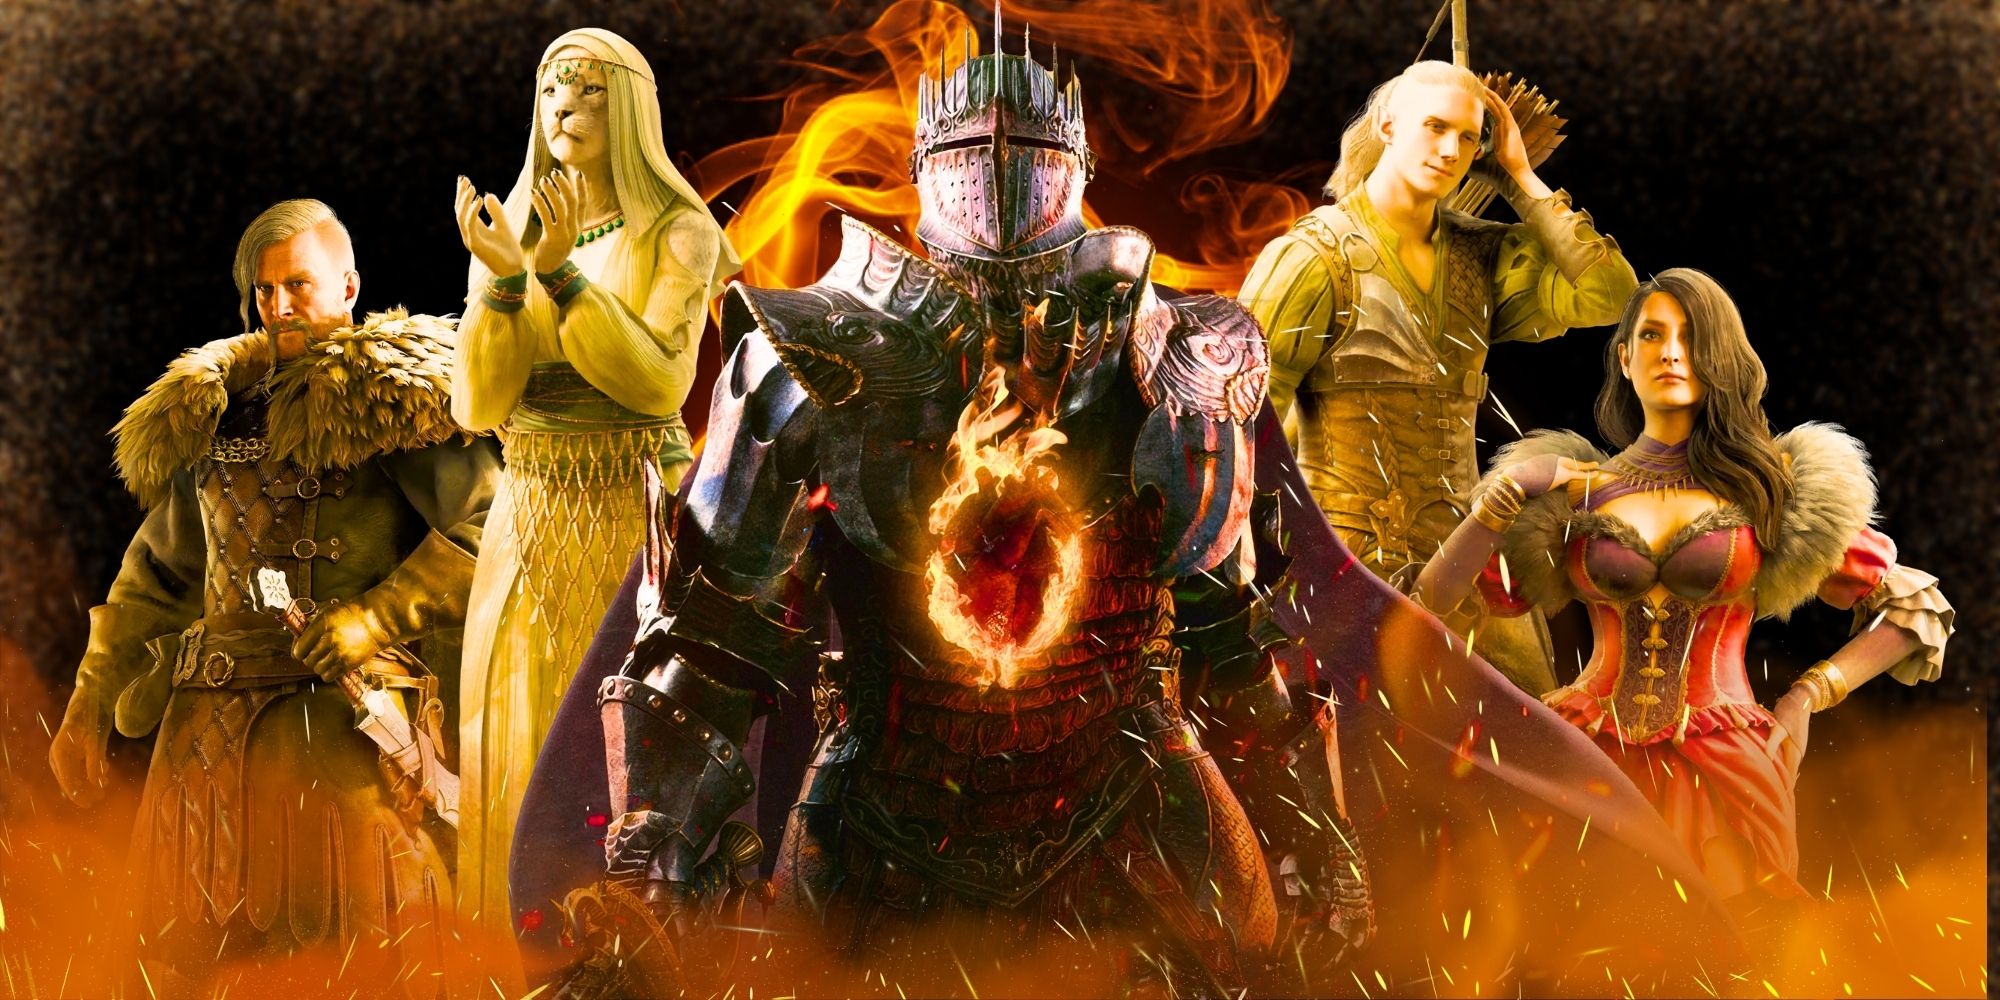 Cinco personagens de Dragon's Dogma, posando ao redor do Arisen no centro, todos cercados por chamas.